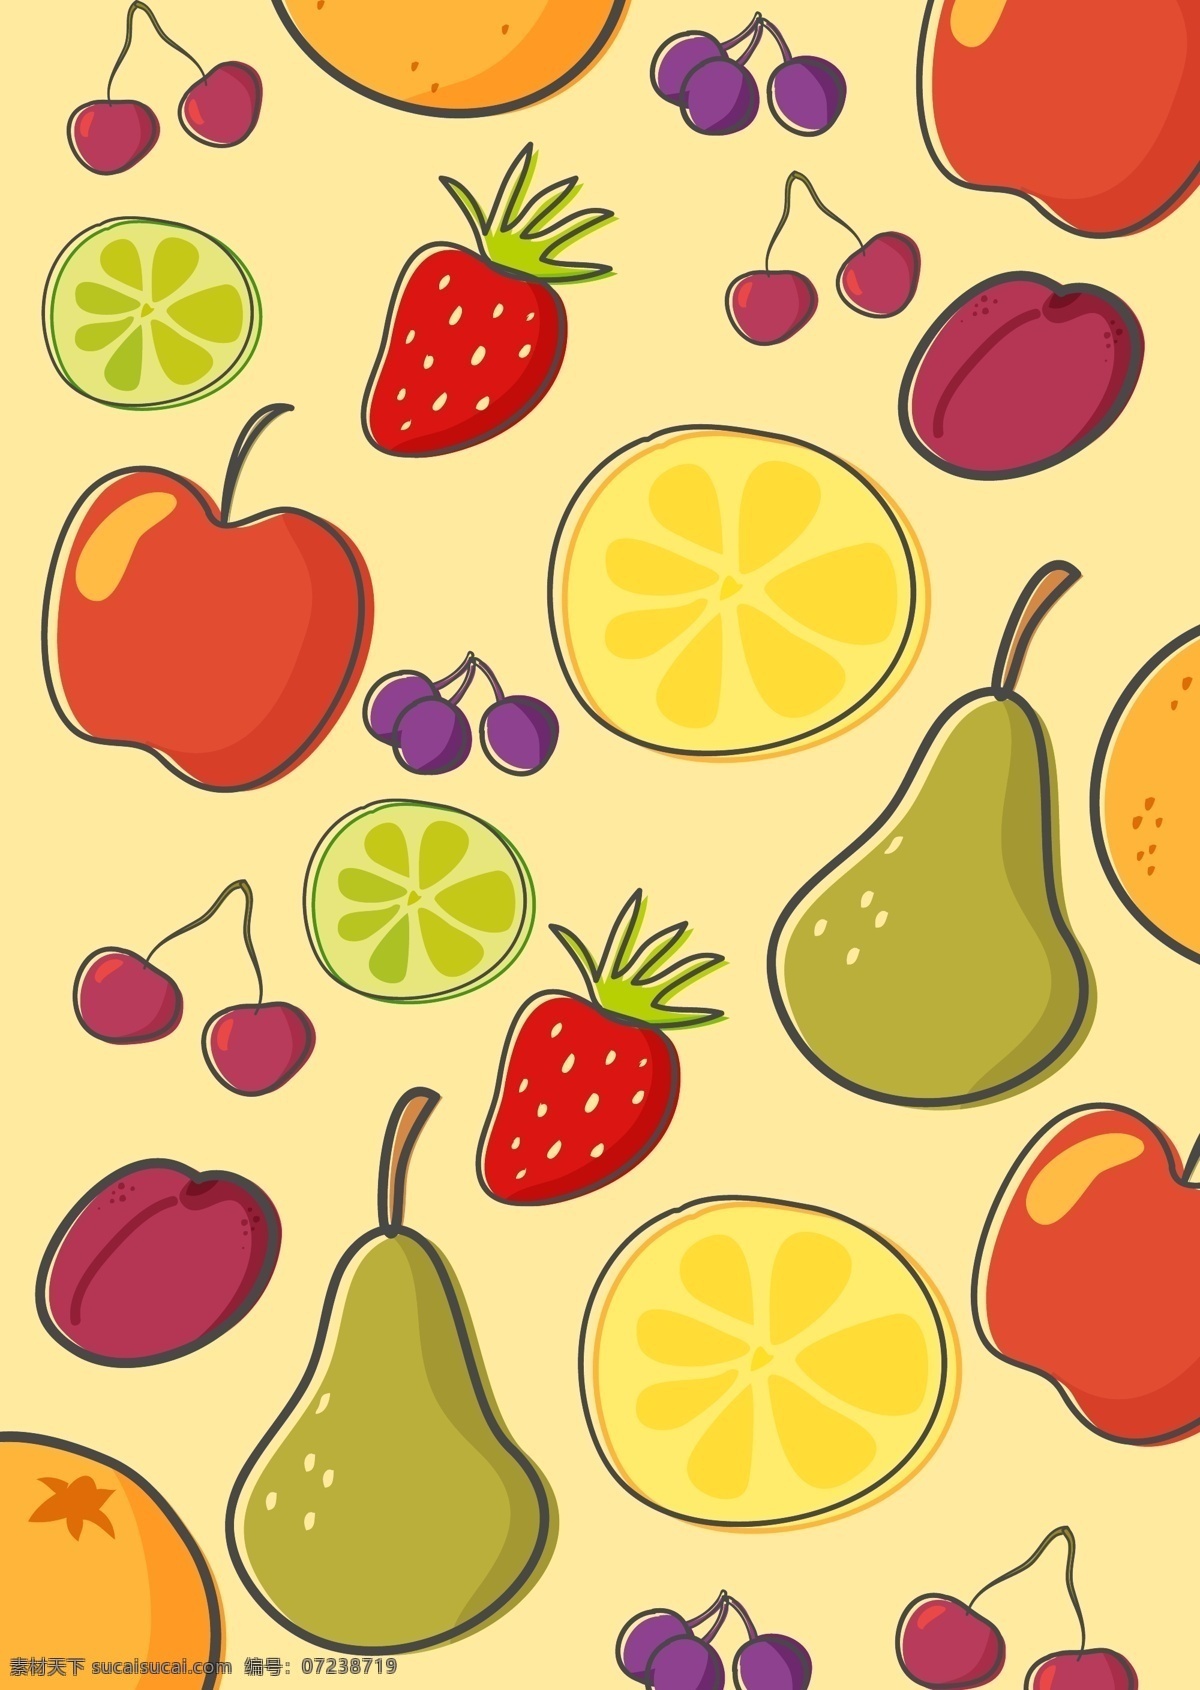 手绘 清新 水果 背景 手绘美食 矢量素材 食物 手绘食物 美食图标 美食插画 水果背景 手绘水果 梨子 橙子 柠檬 草莓 樱桃